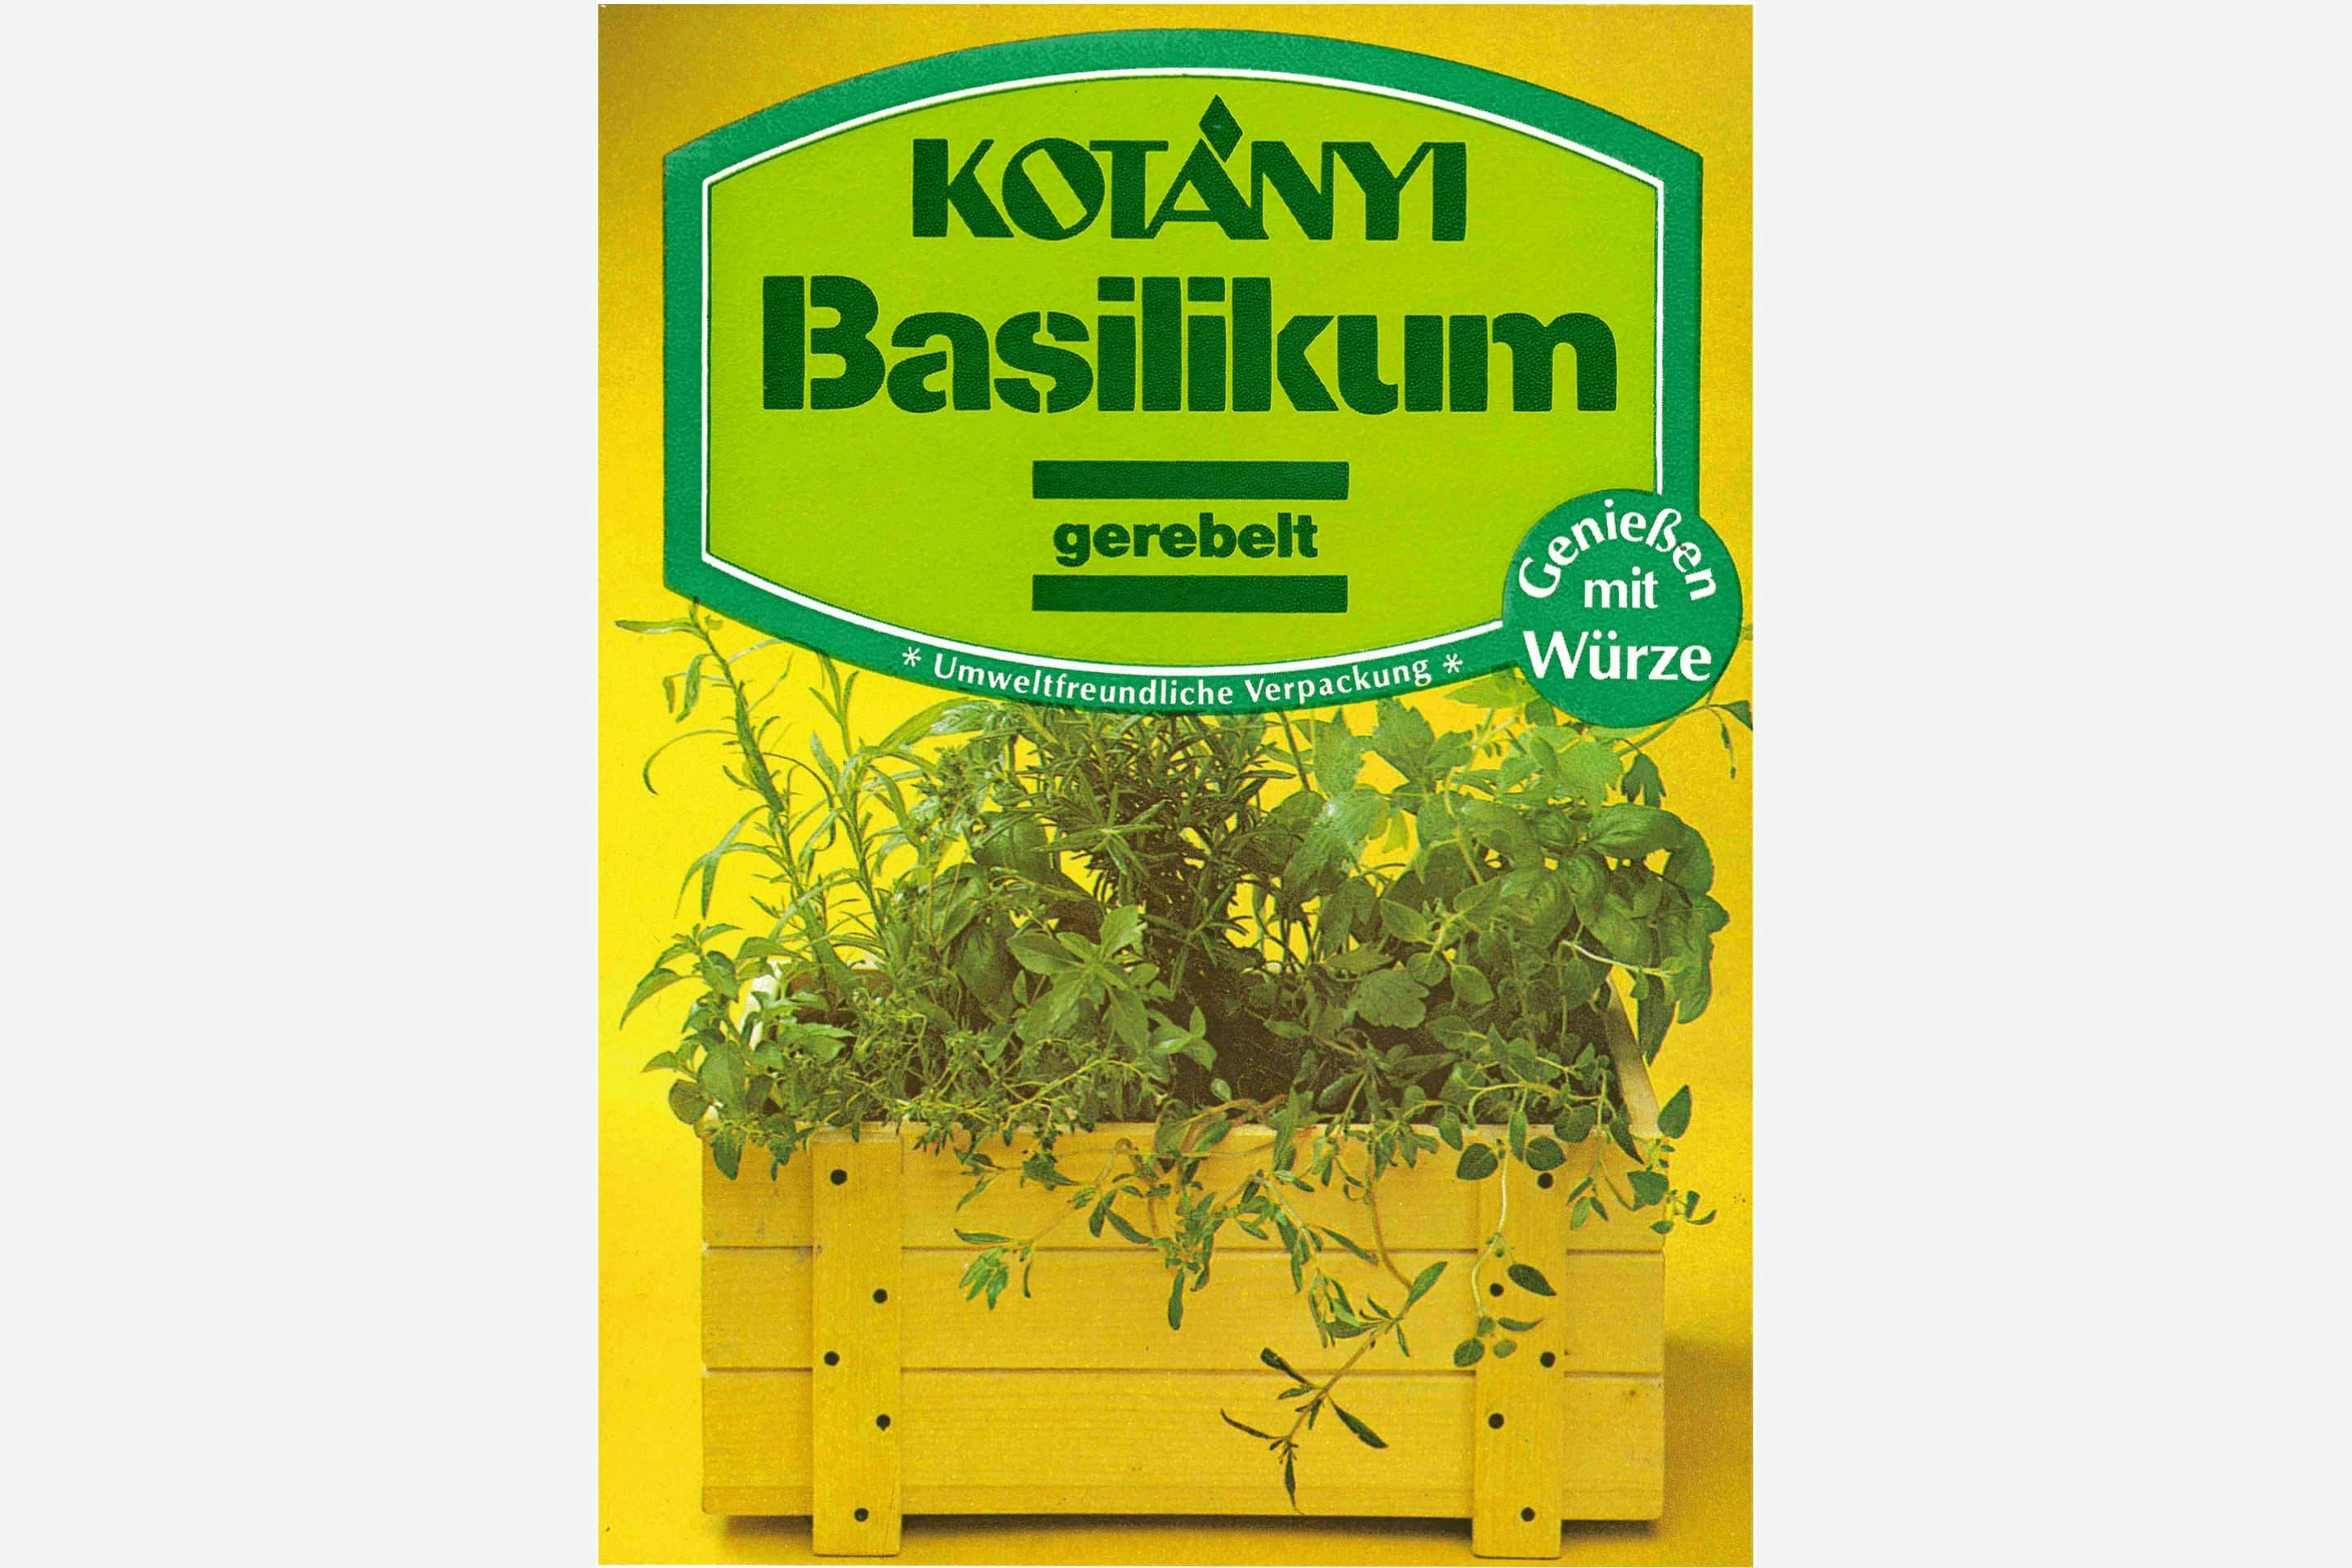 Экологичный пакетик с базиликом Kotányi, 1980-е годы.